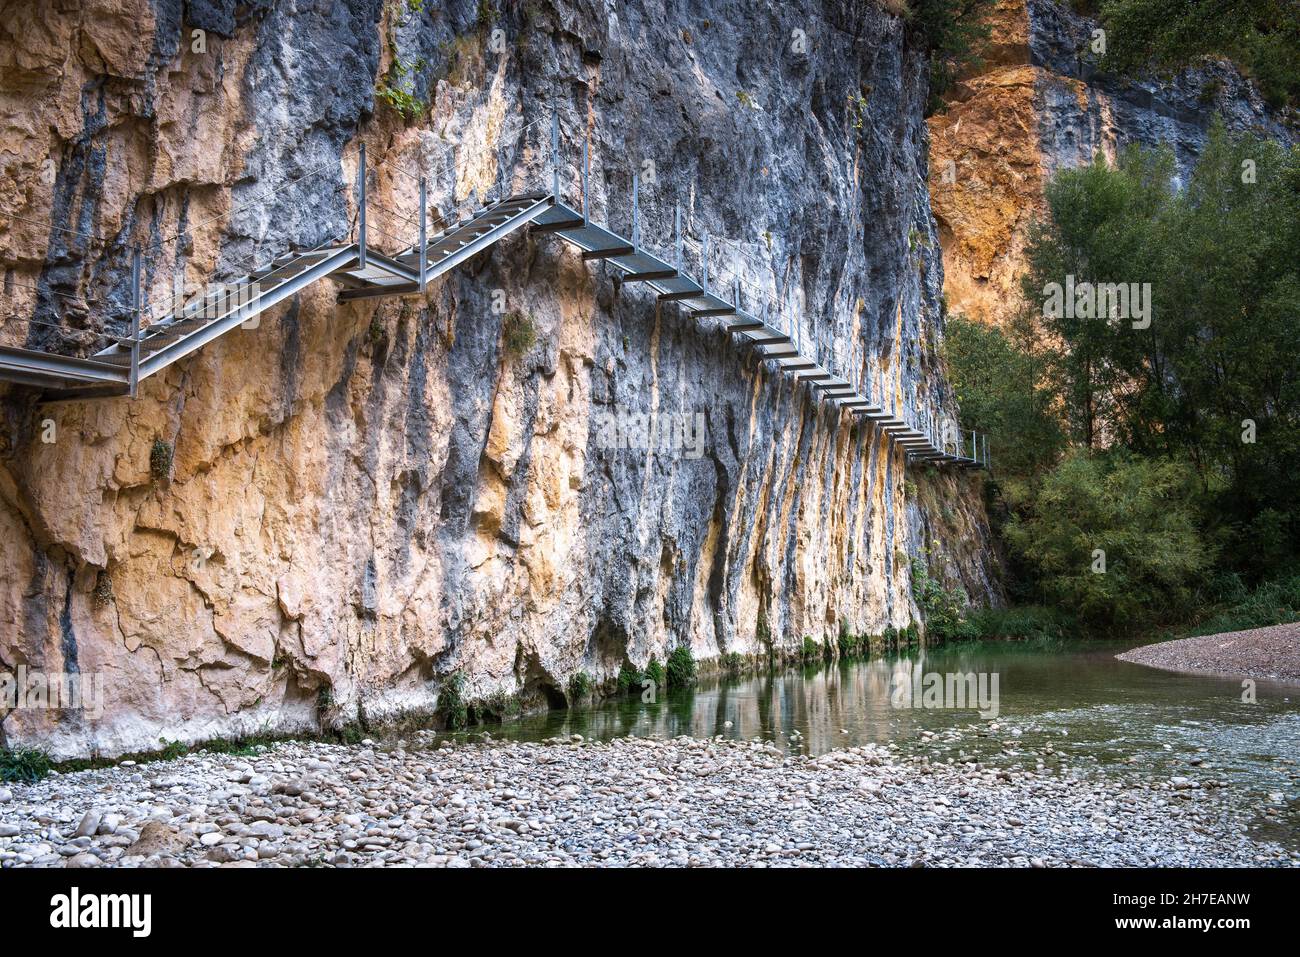 Sentier de la rivière Vero, Alquezar, province de Huesca, Espagne Banque D'Images